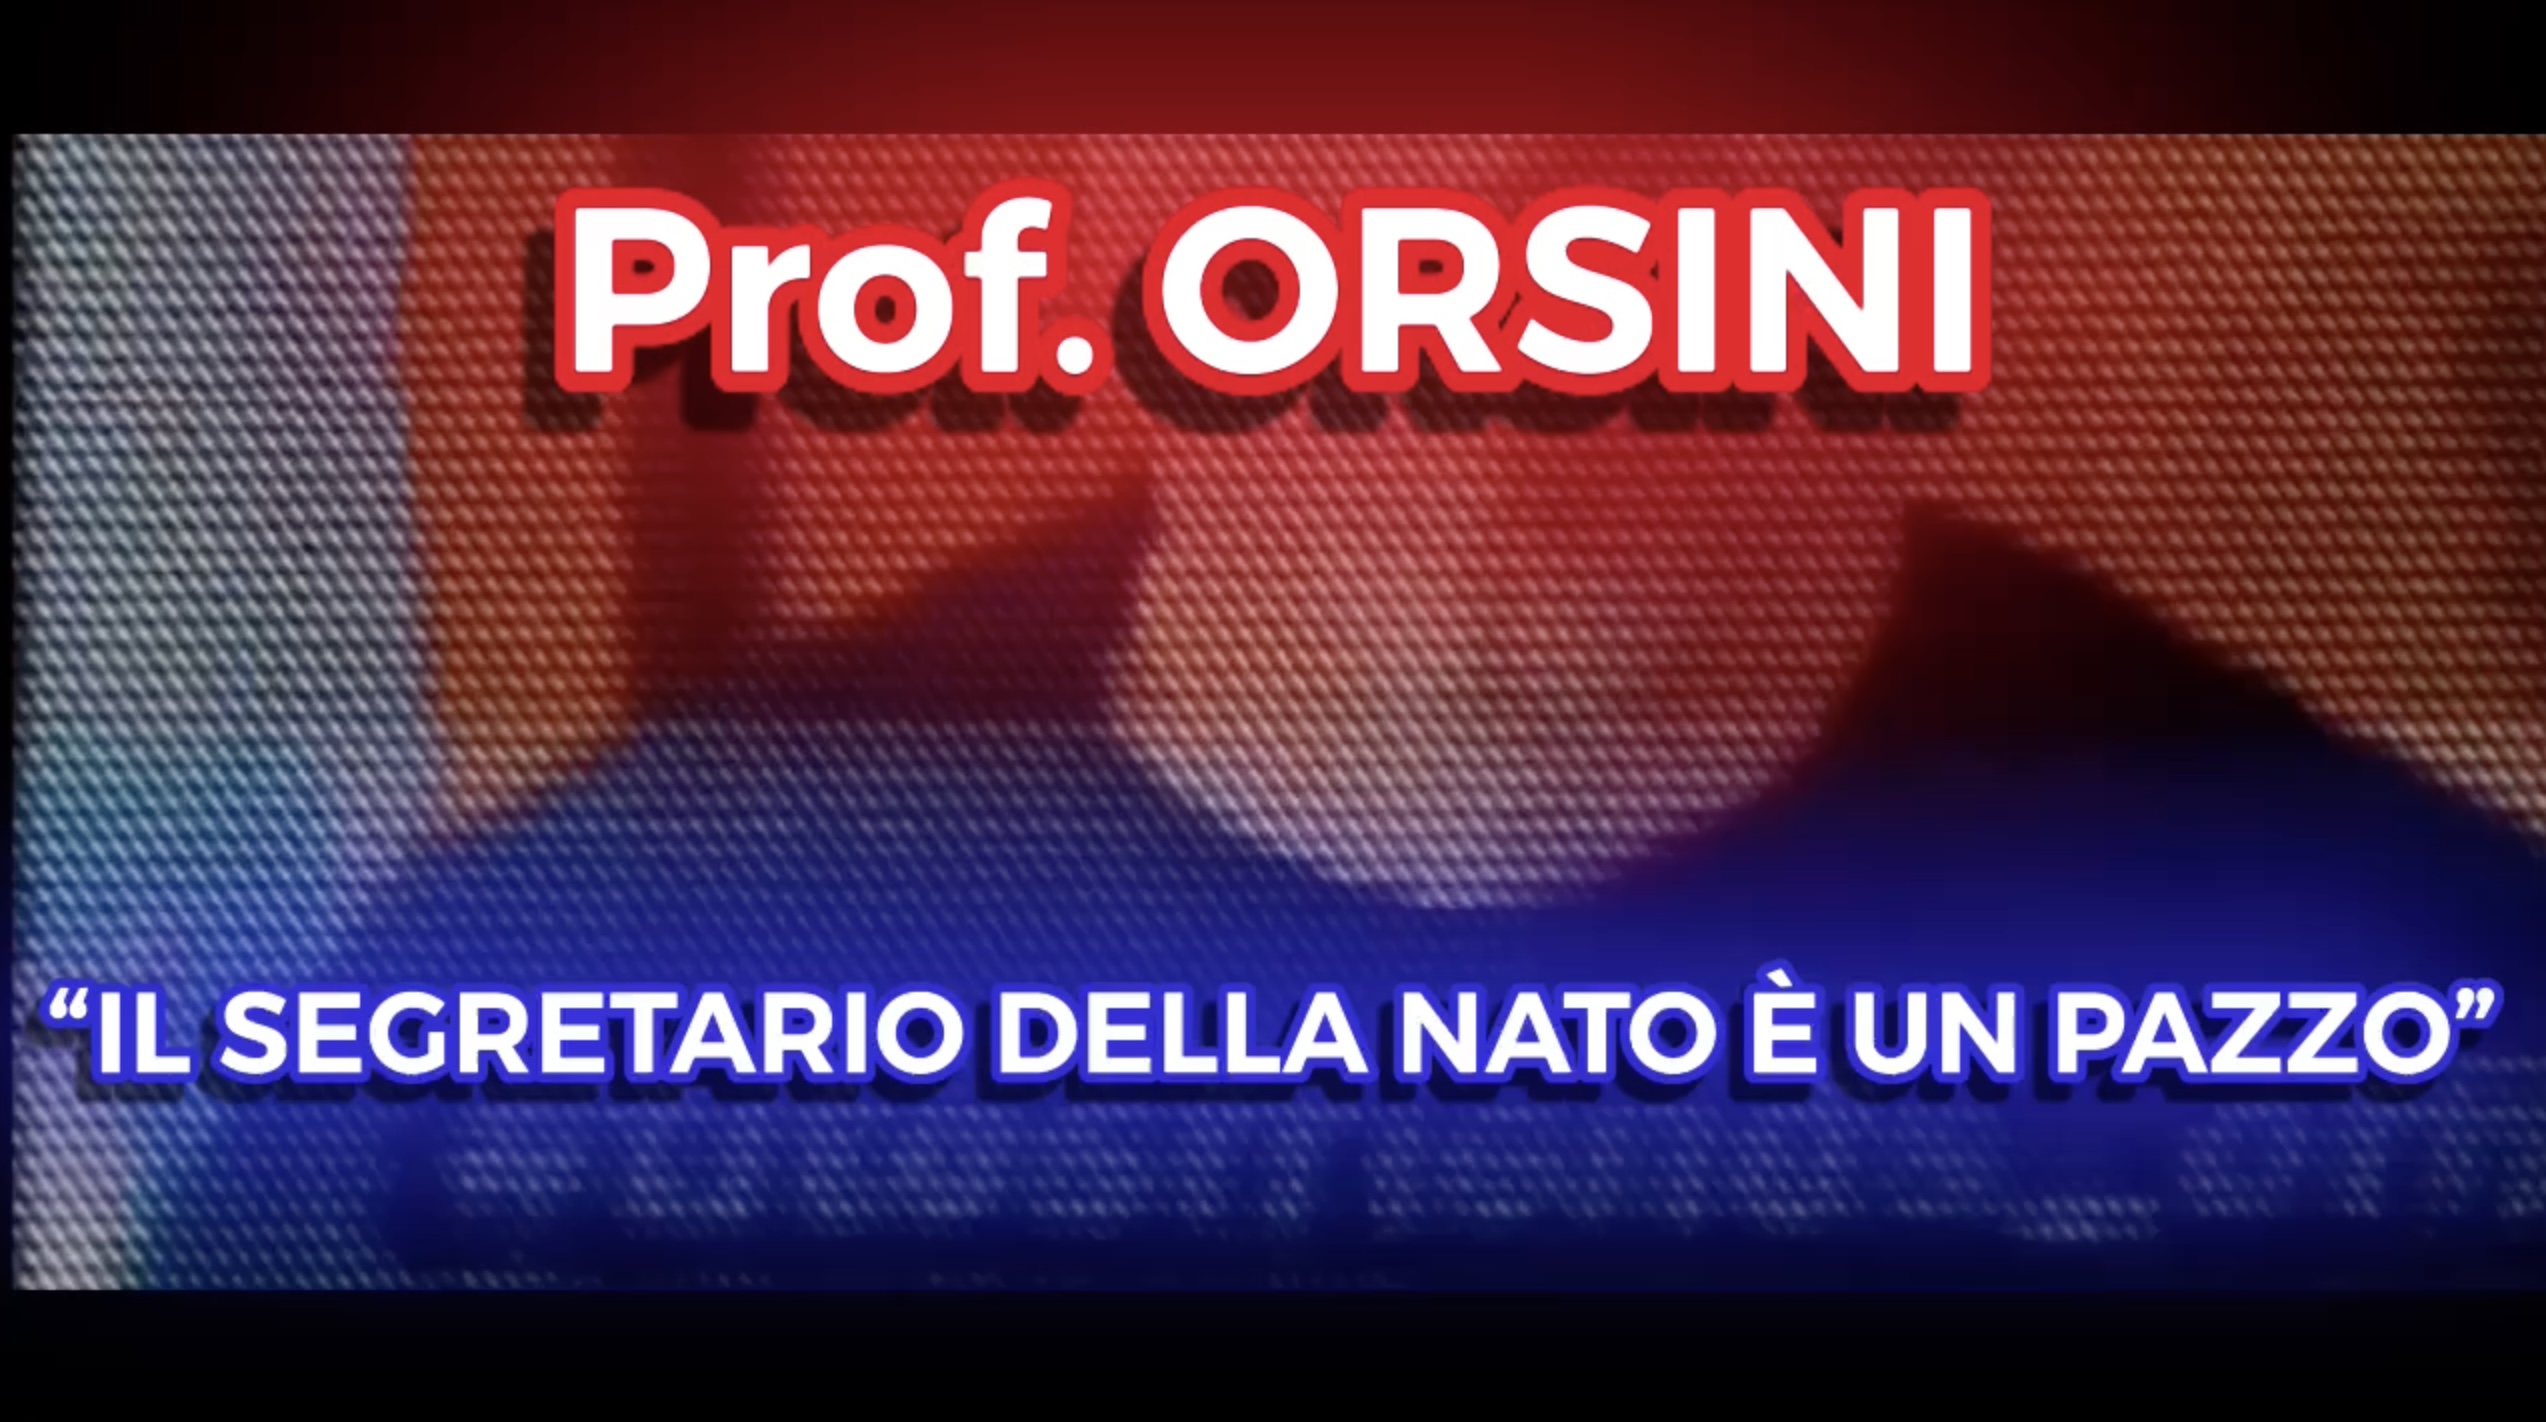 Prof. ORSINI - Il Segretario della NATO è un Pazzo